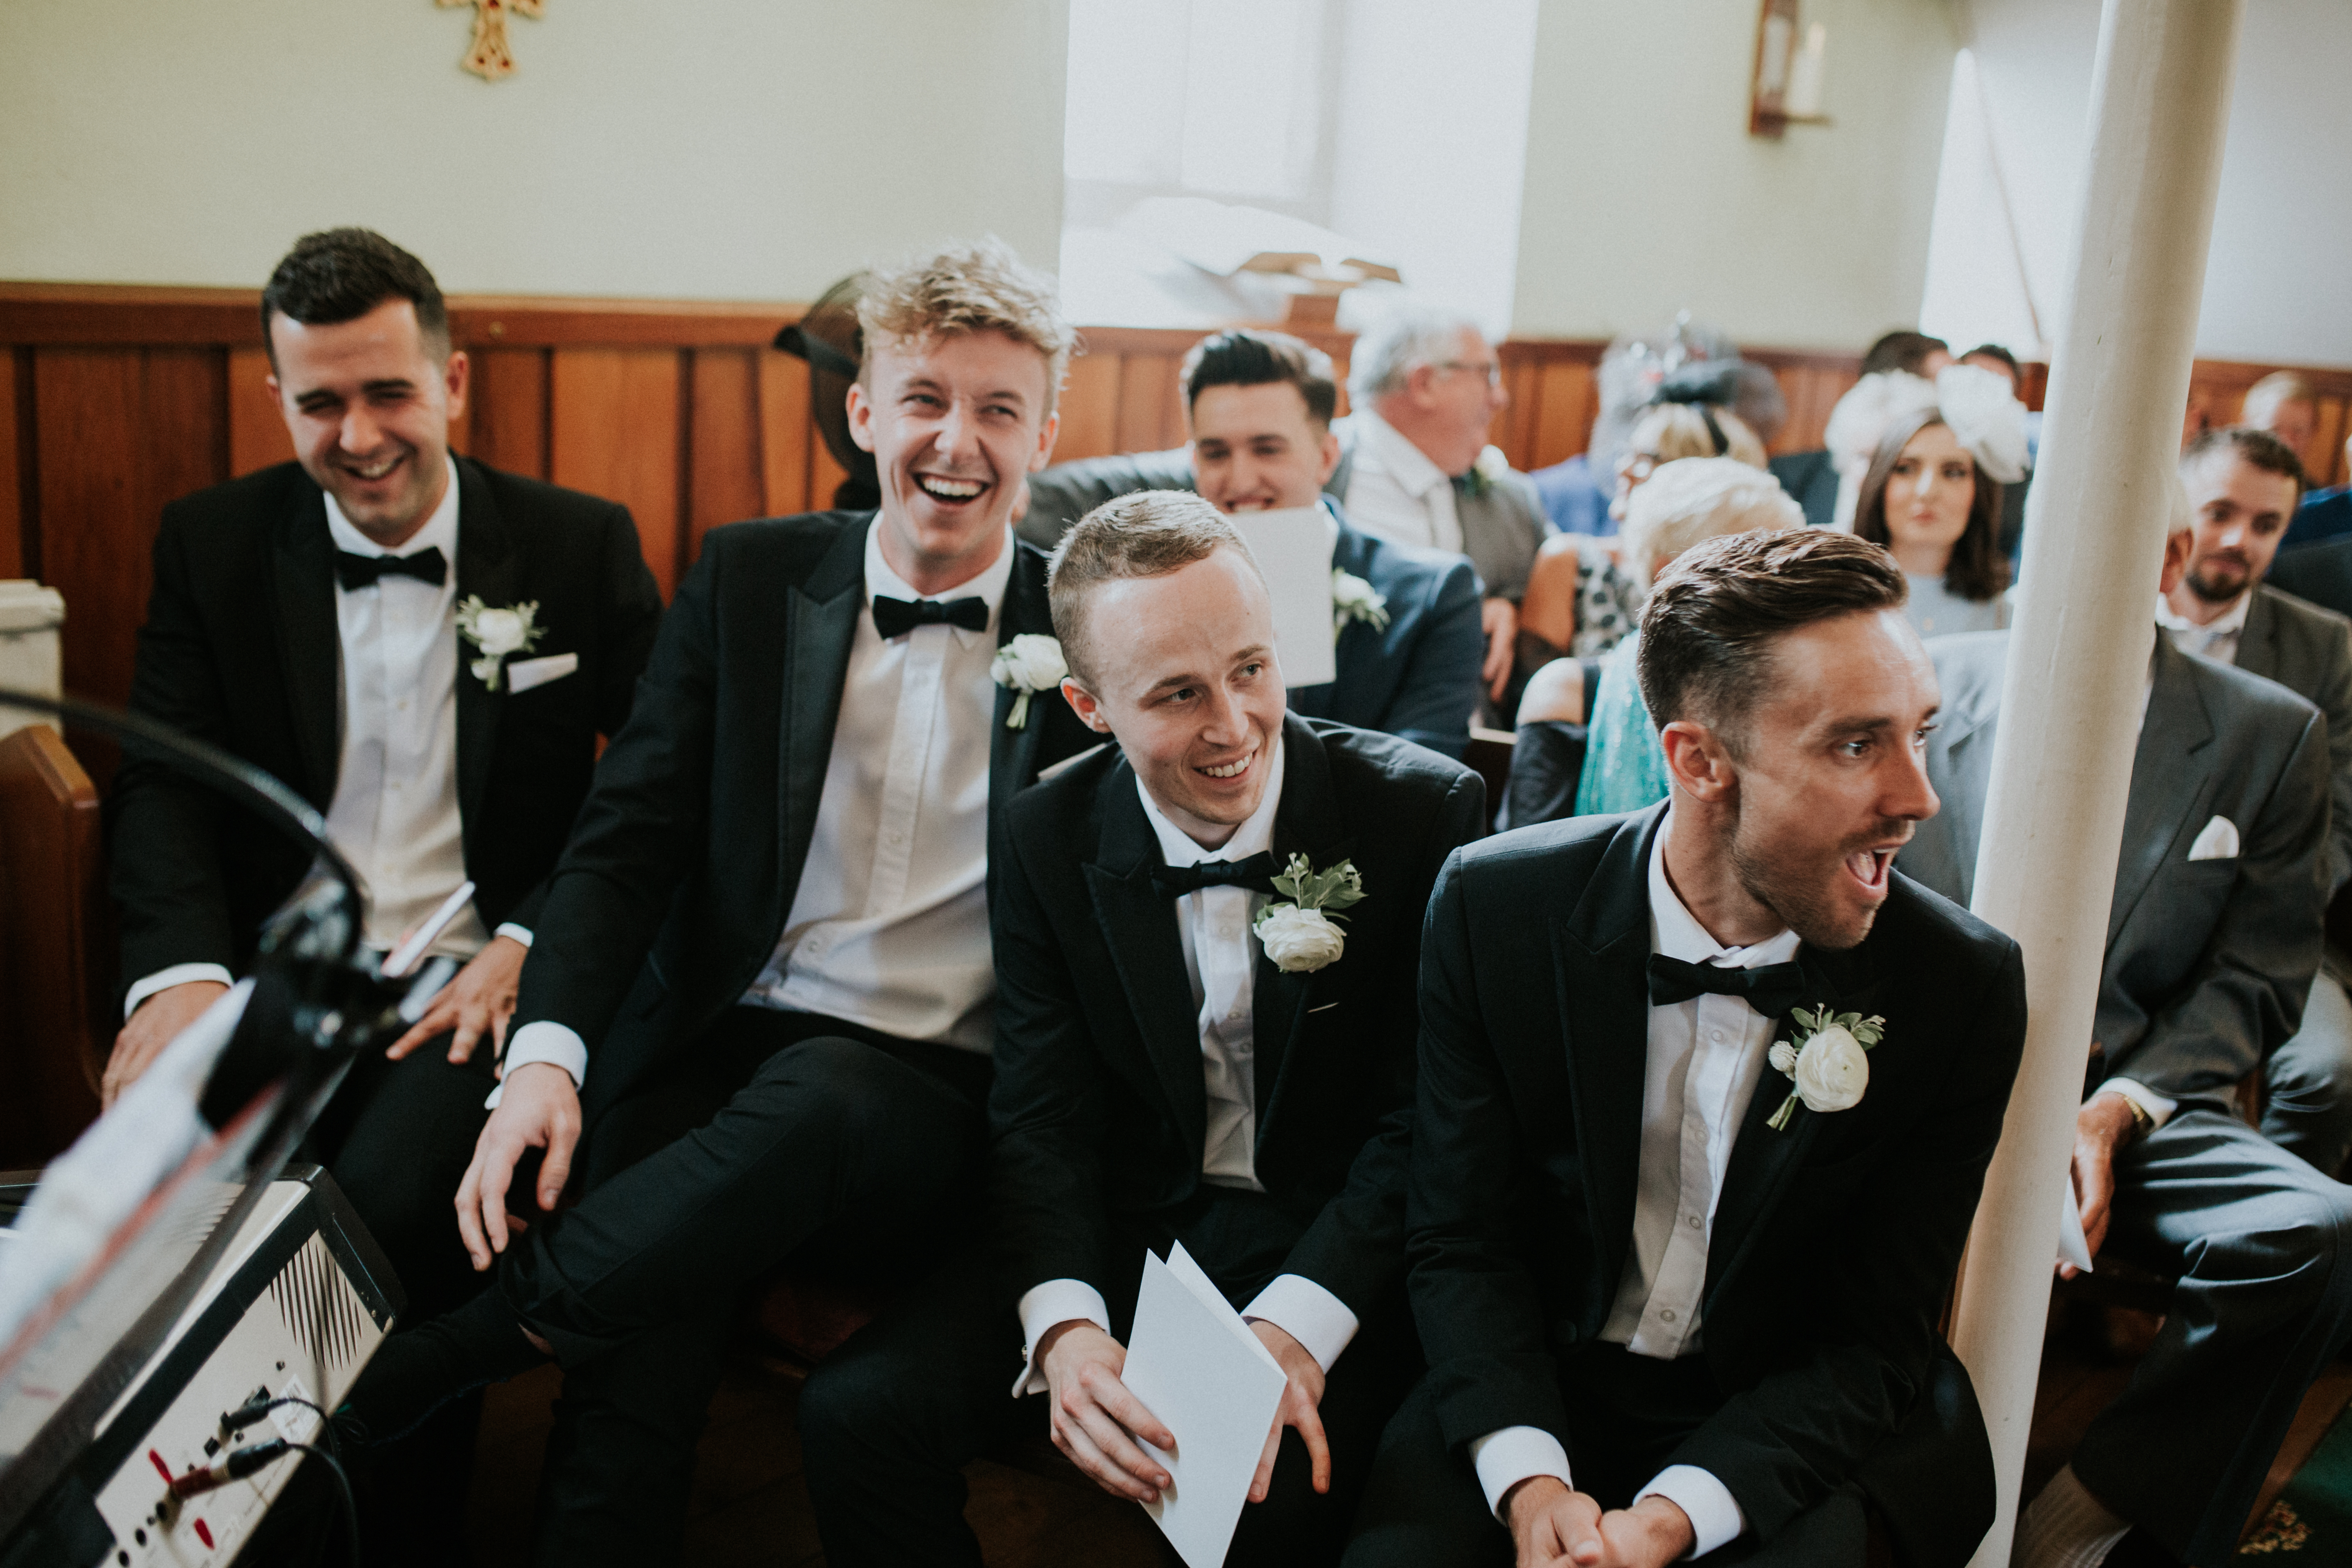 groomsmen laughing 